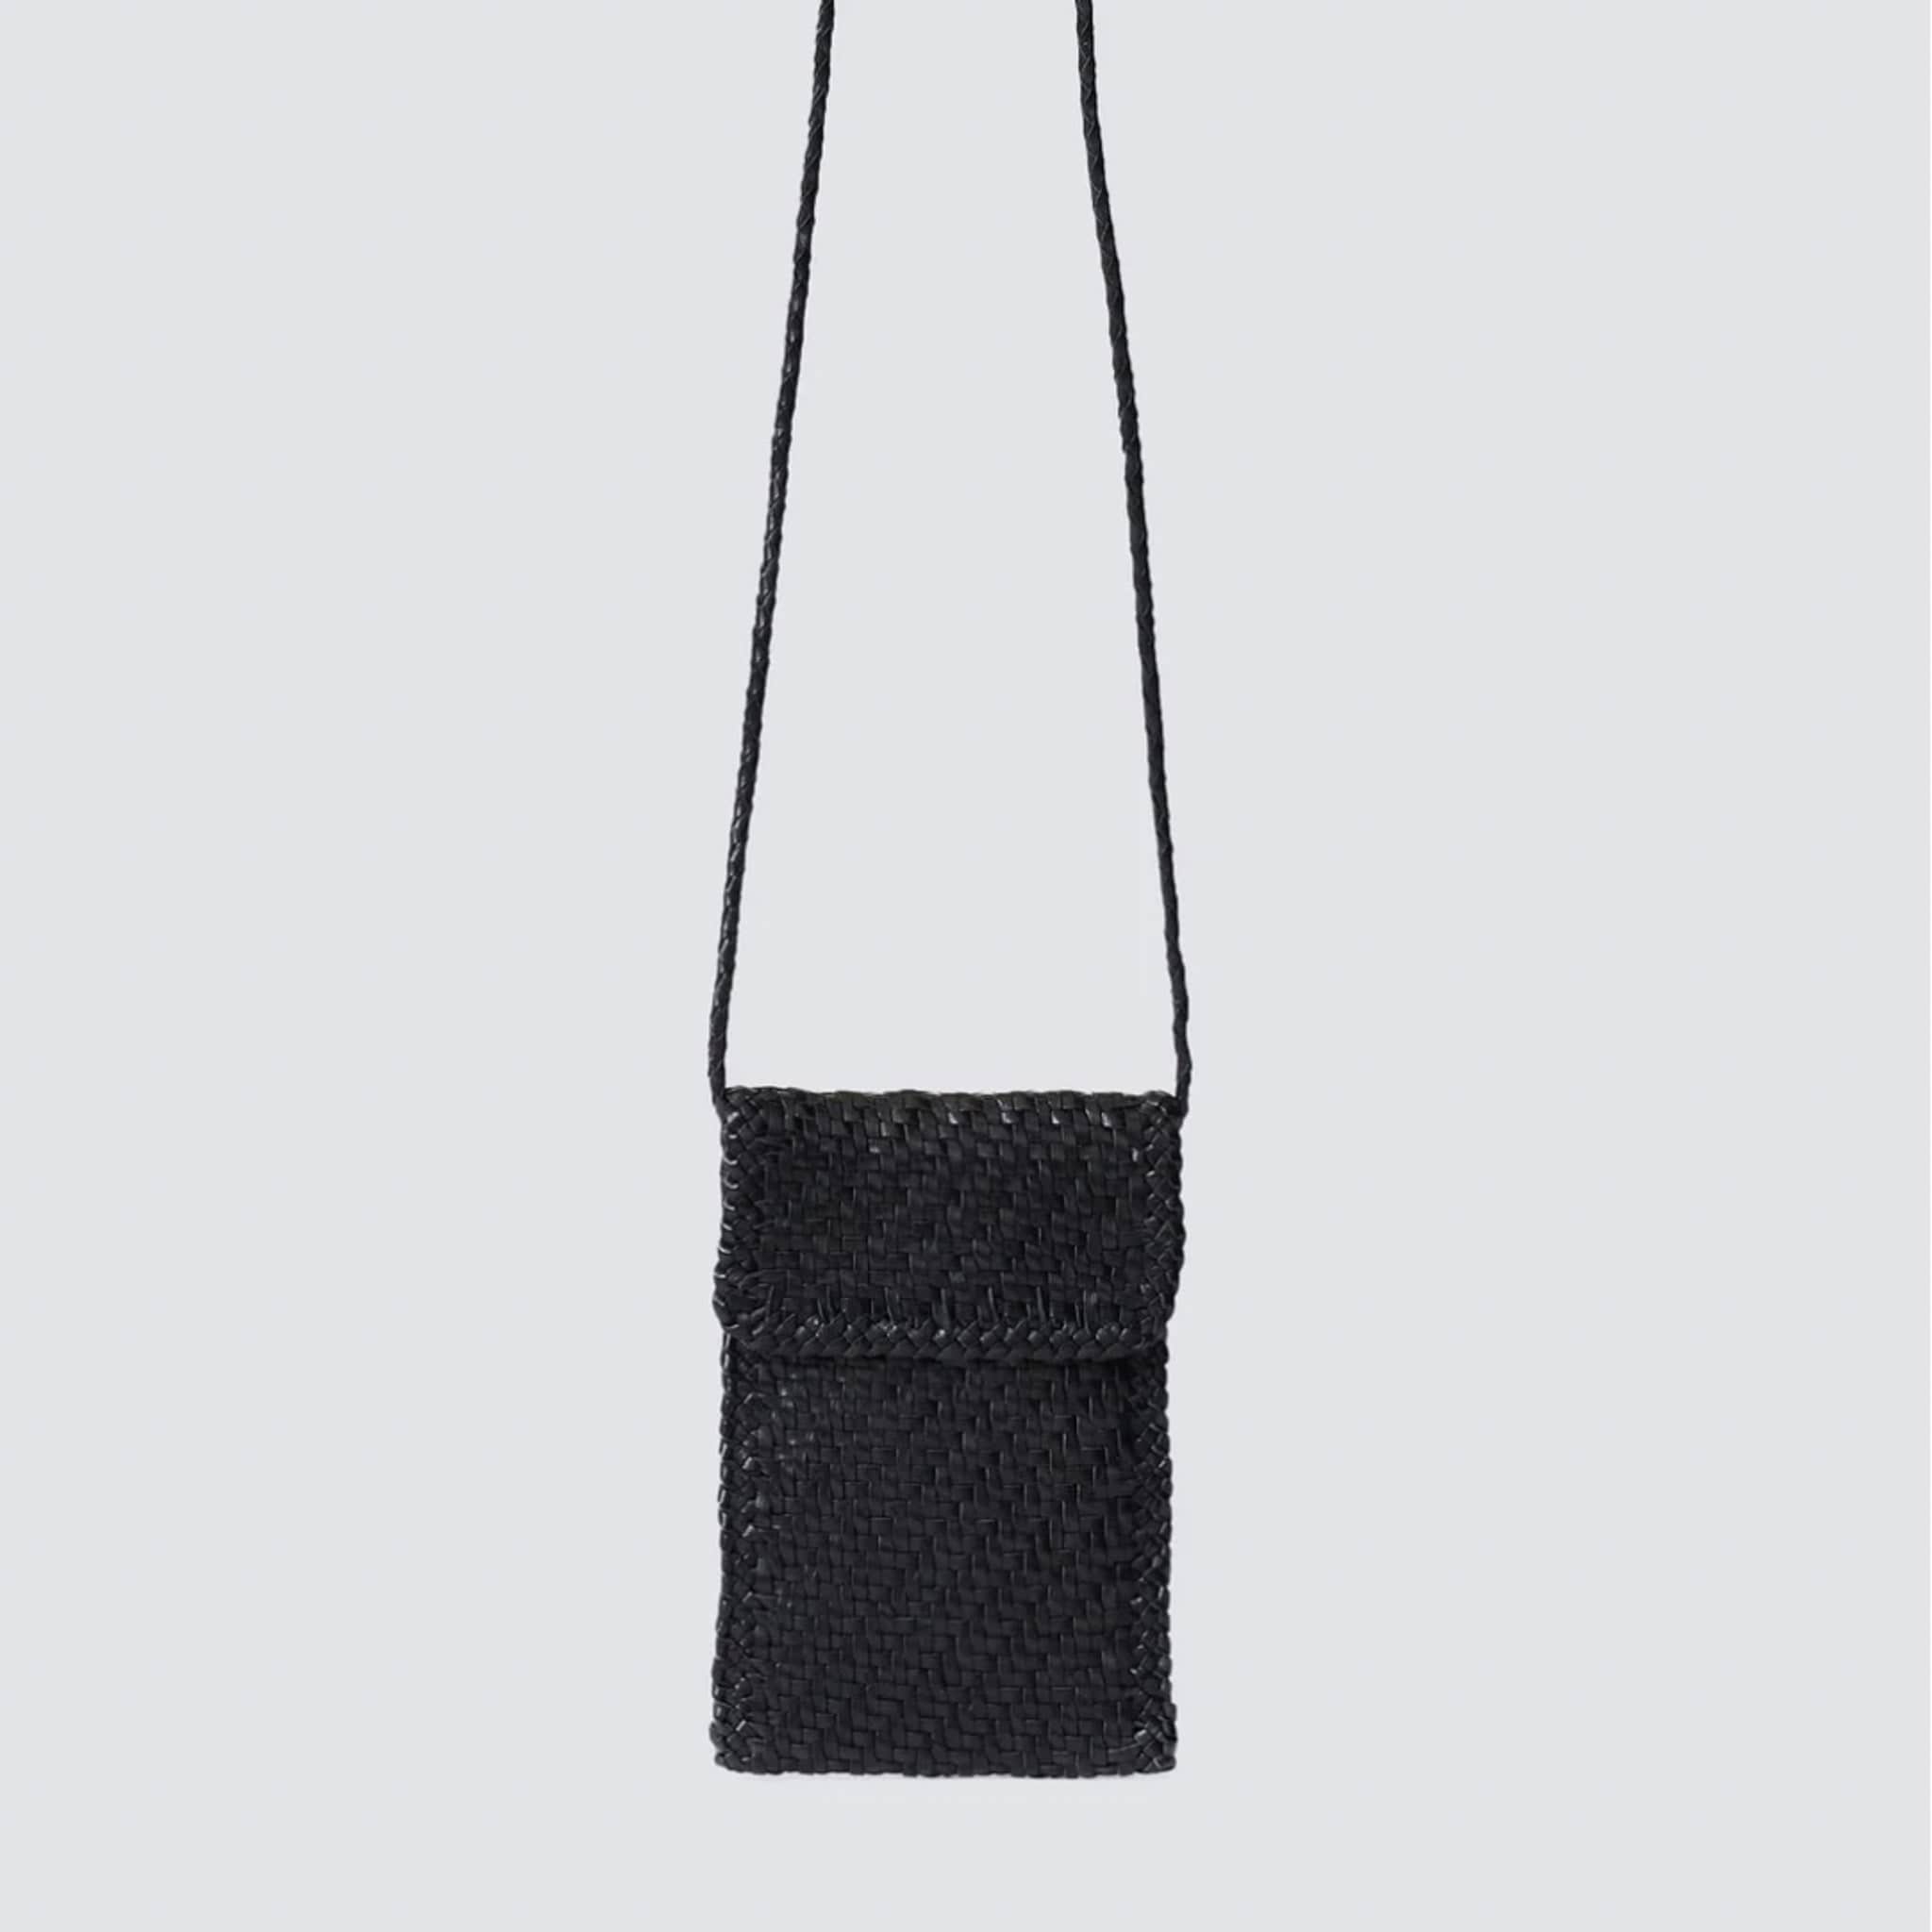 Dragon Diffusion Handbags Black Woven Phone Crossbody by Dragon Diffusion